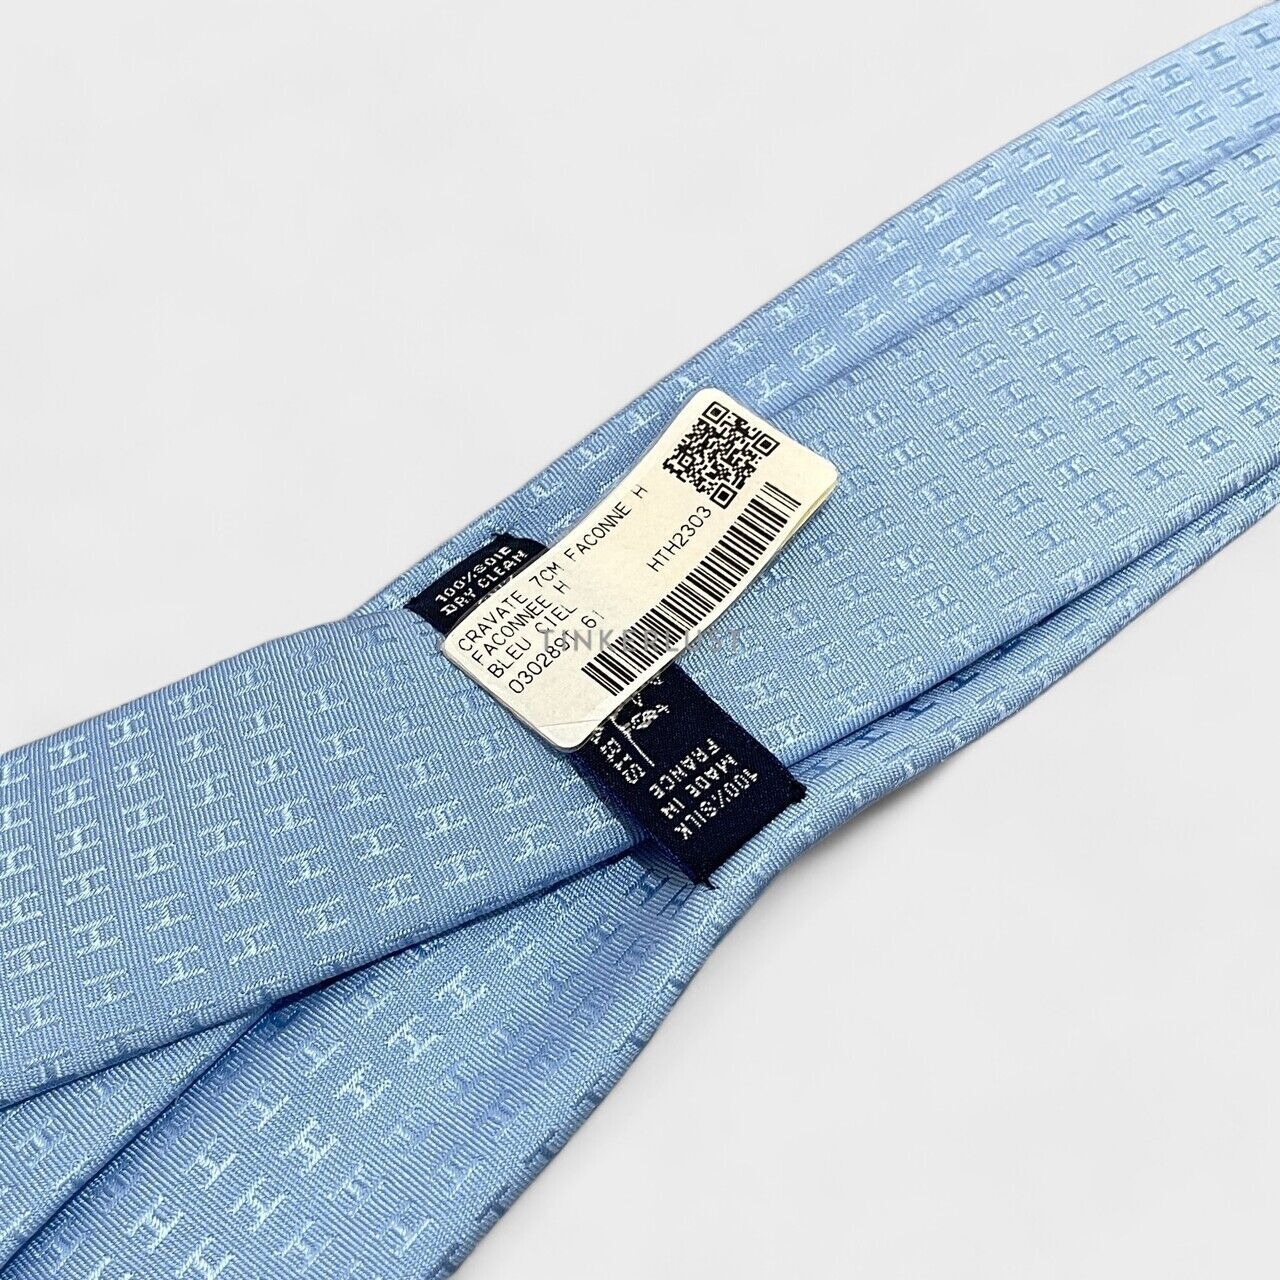 Hermes Faconnee H Tie Bleu Lac Neck Tie